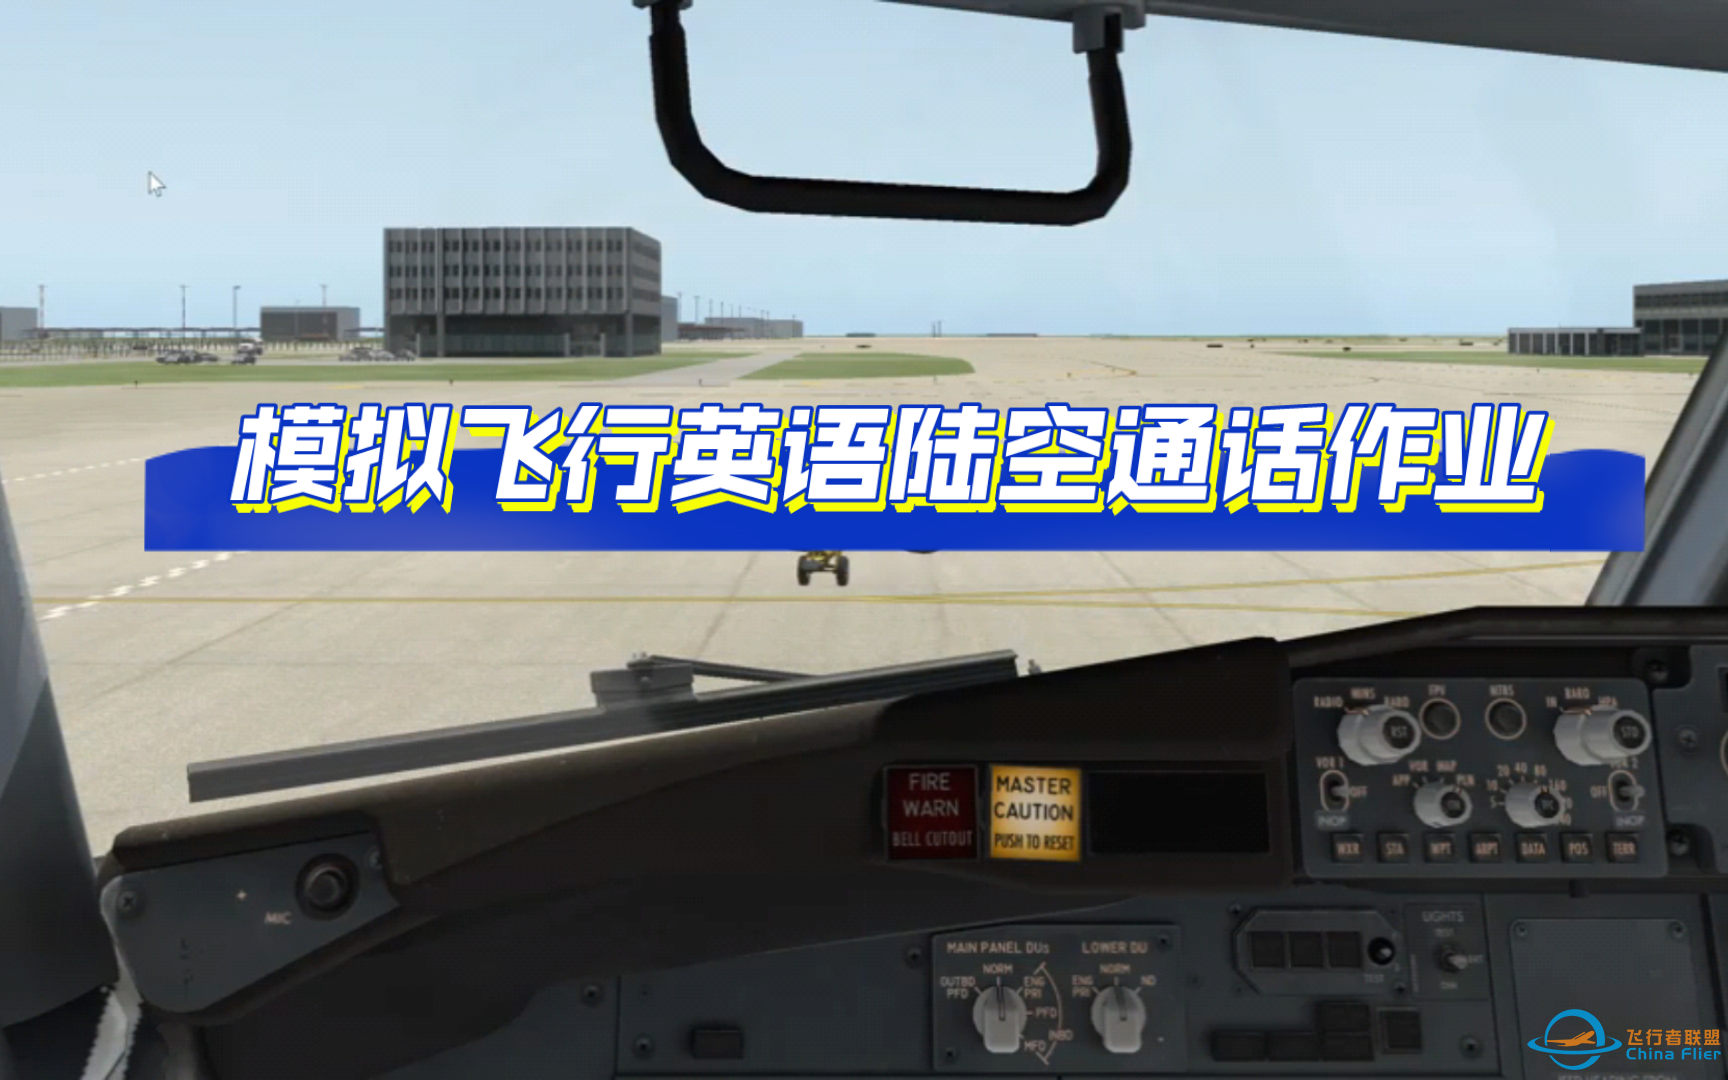 【飞行模拟英语陆空通话作业】Xplane飞行模拟陆空通话：ATIS-Line up-9006 